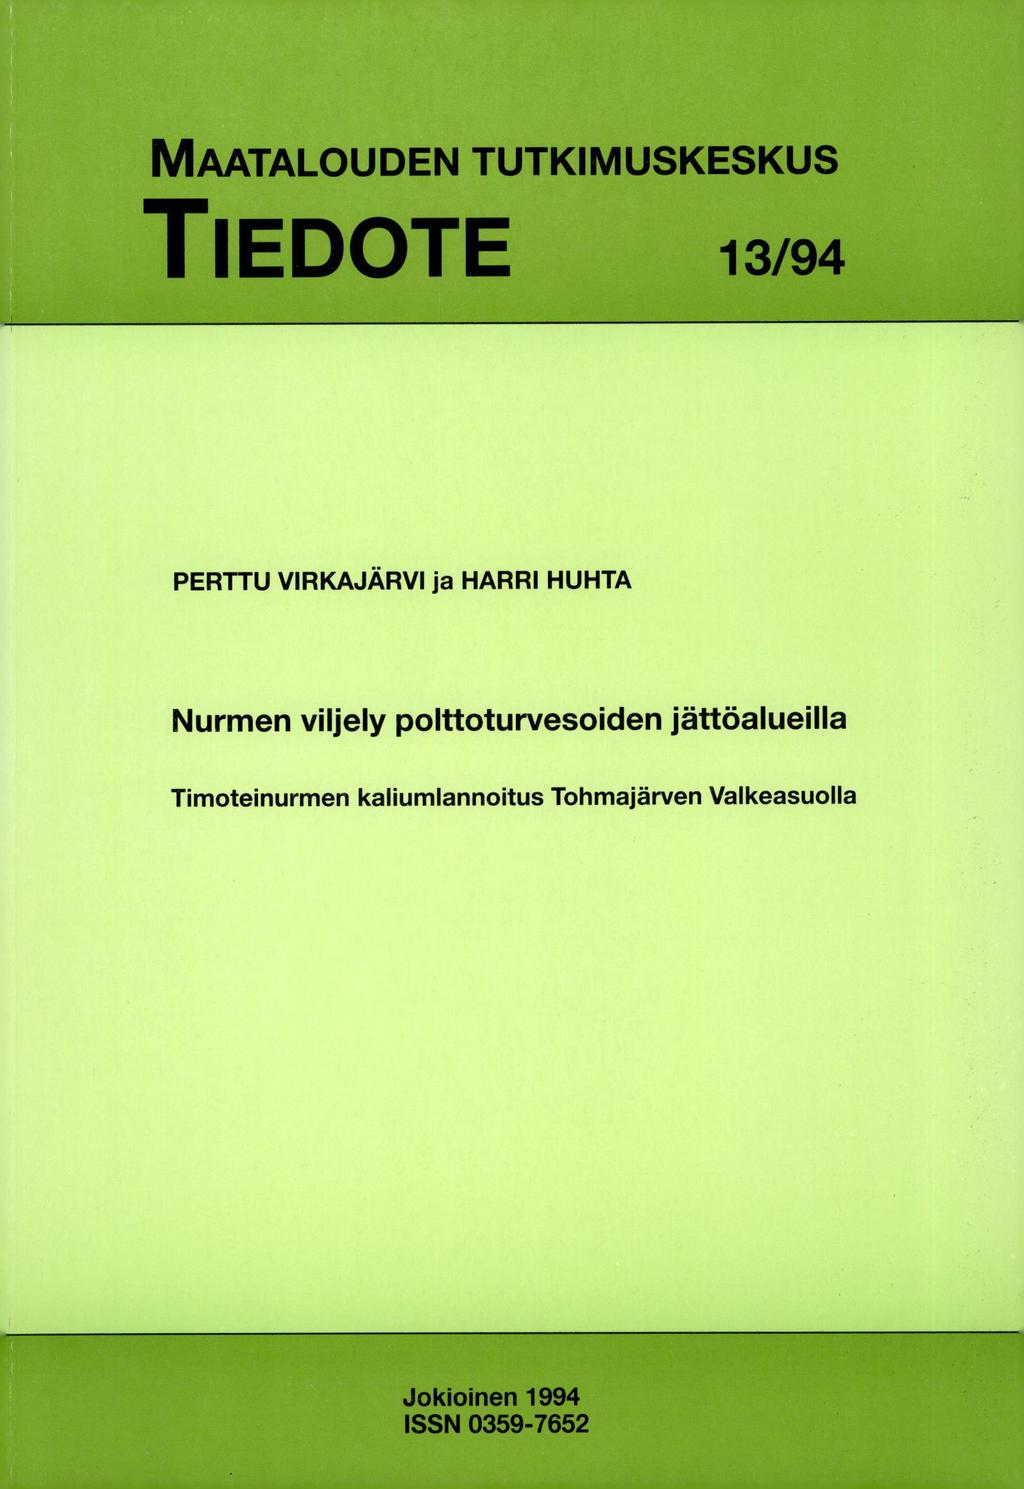 MAATALOUDEN TUTKIMUSKESKUS TIEDOTE 13/94 PERTTU VIRKAJÄRVI ja HARRI HUHTA Nurmen viljely